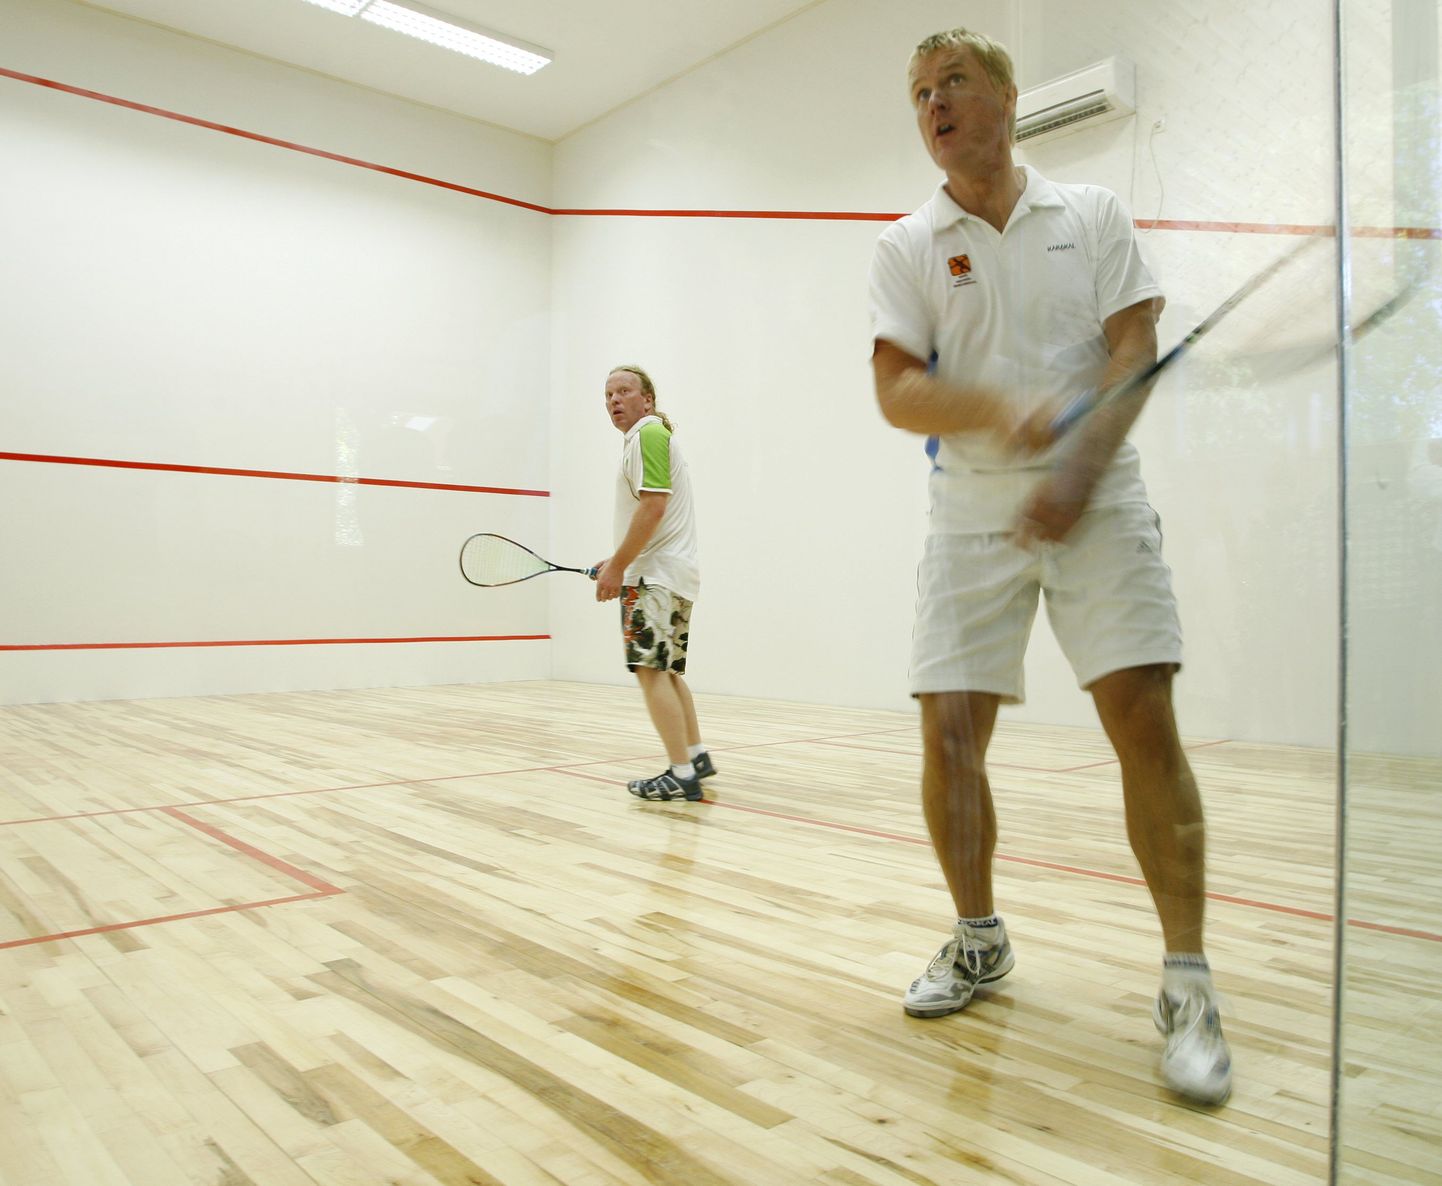 Septembris avati Tääksis Viljandimaa ainus squash`i ehk seinatennise mängimise väljak.